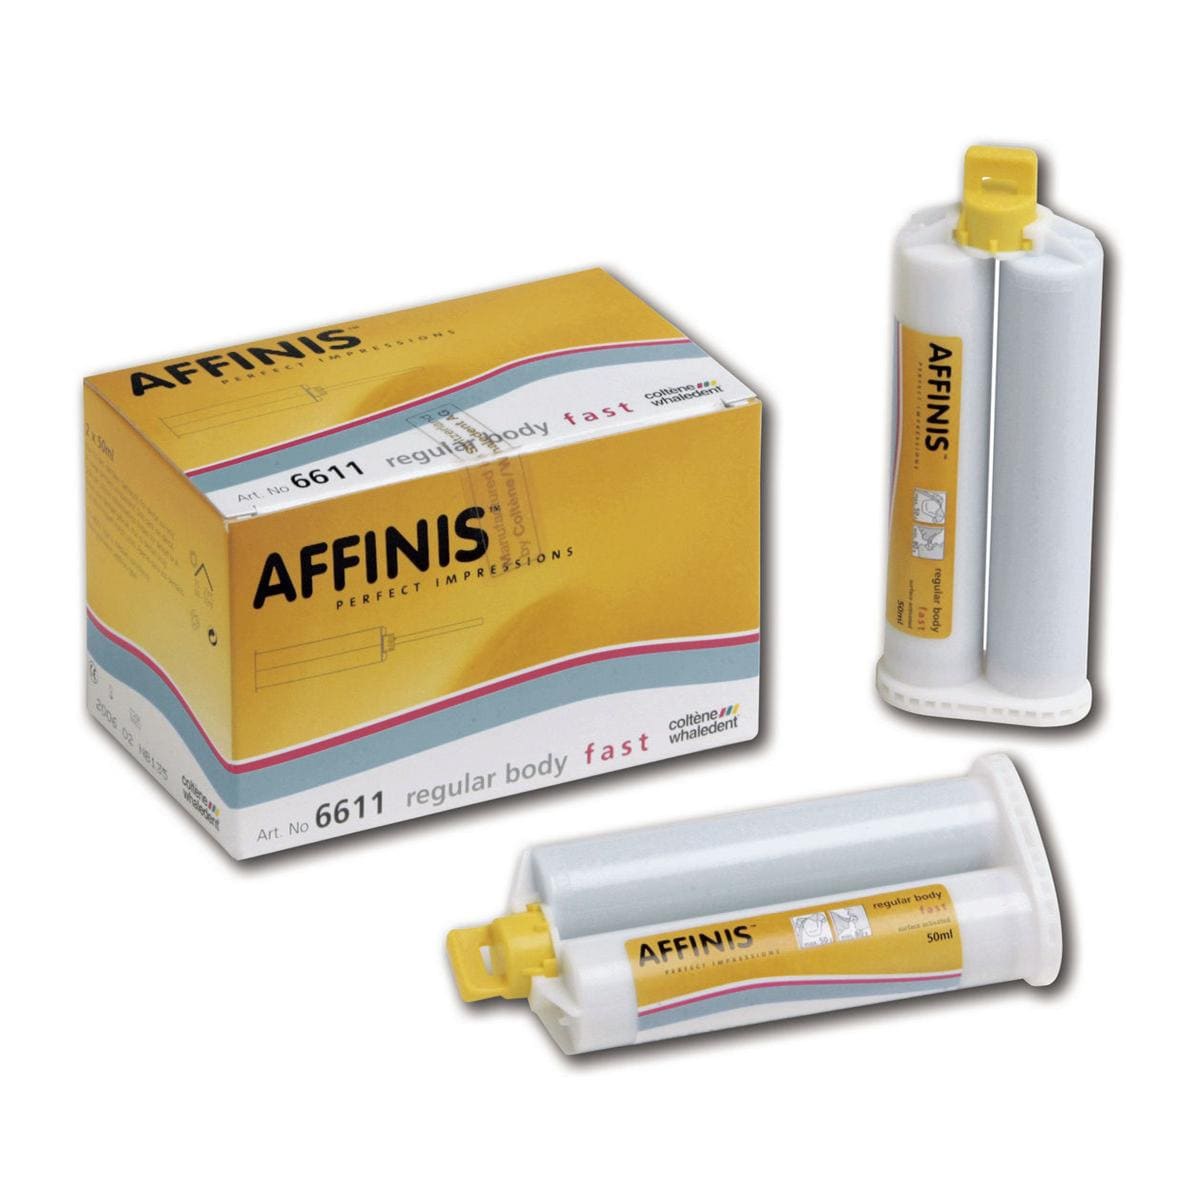 Affinis System - Regular Fast Body, 2x 50 ml en 12 mengtips geel